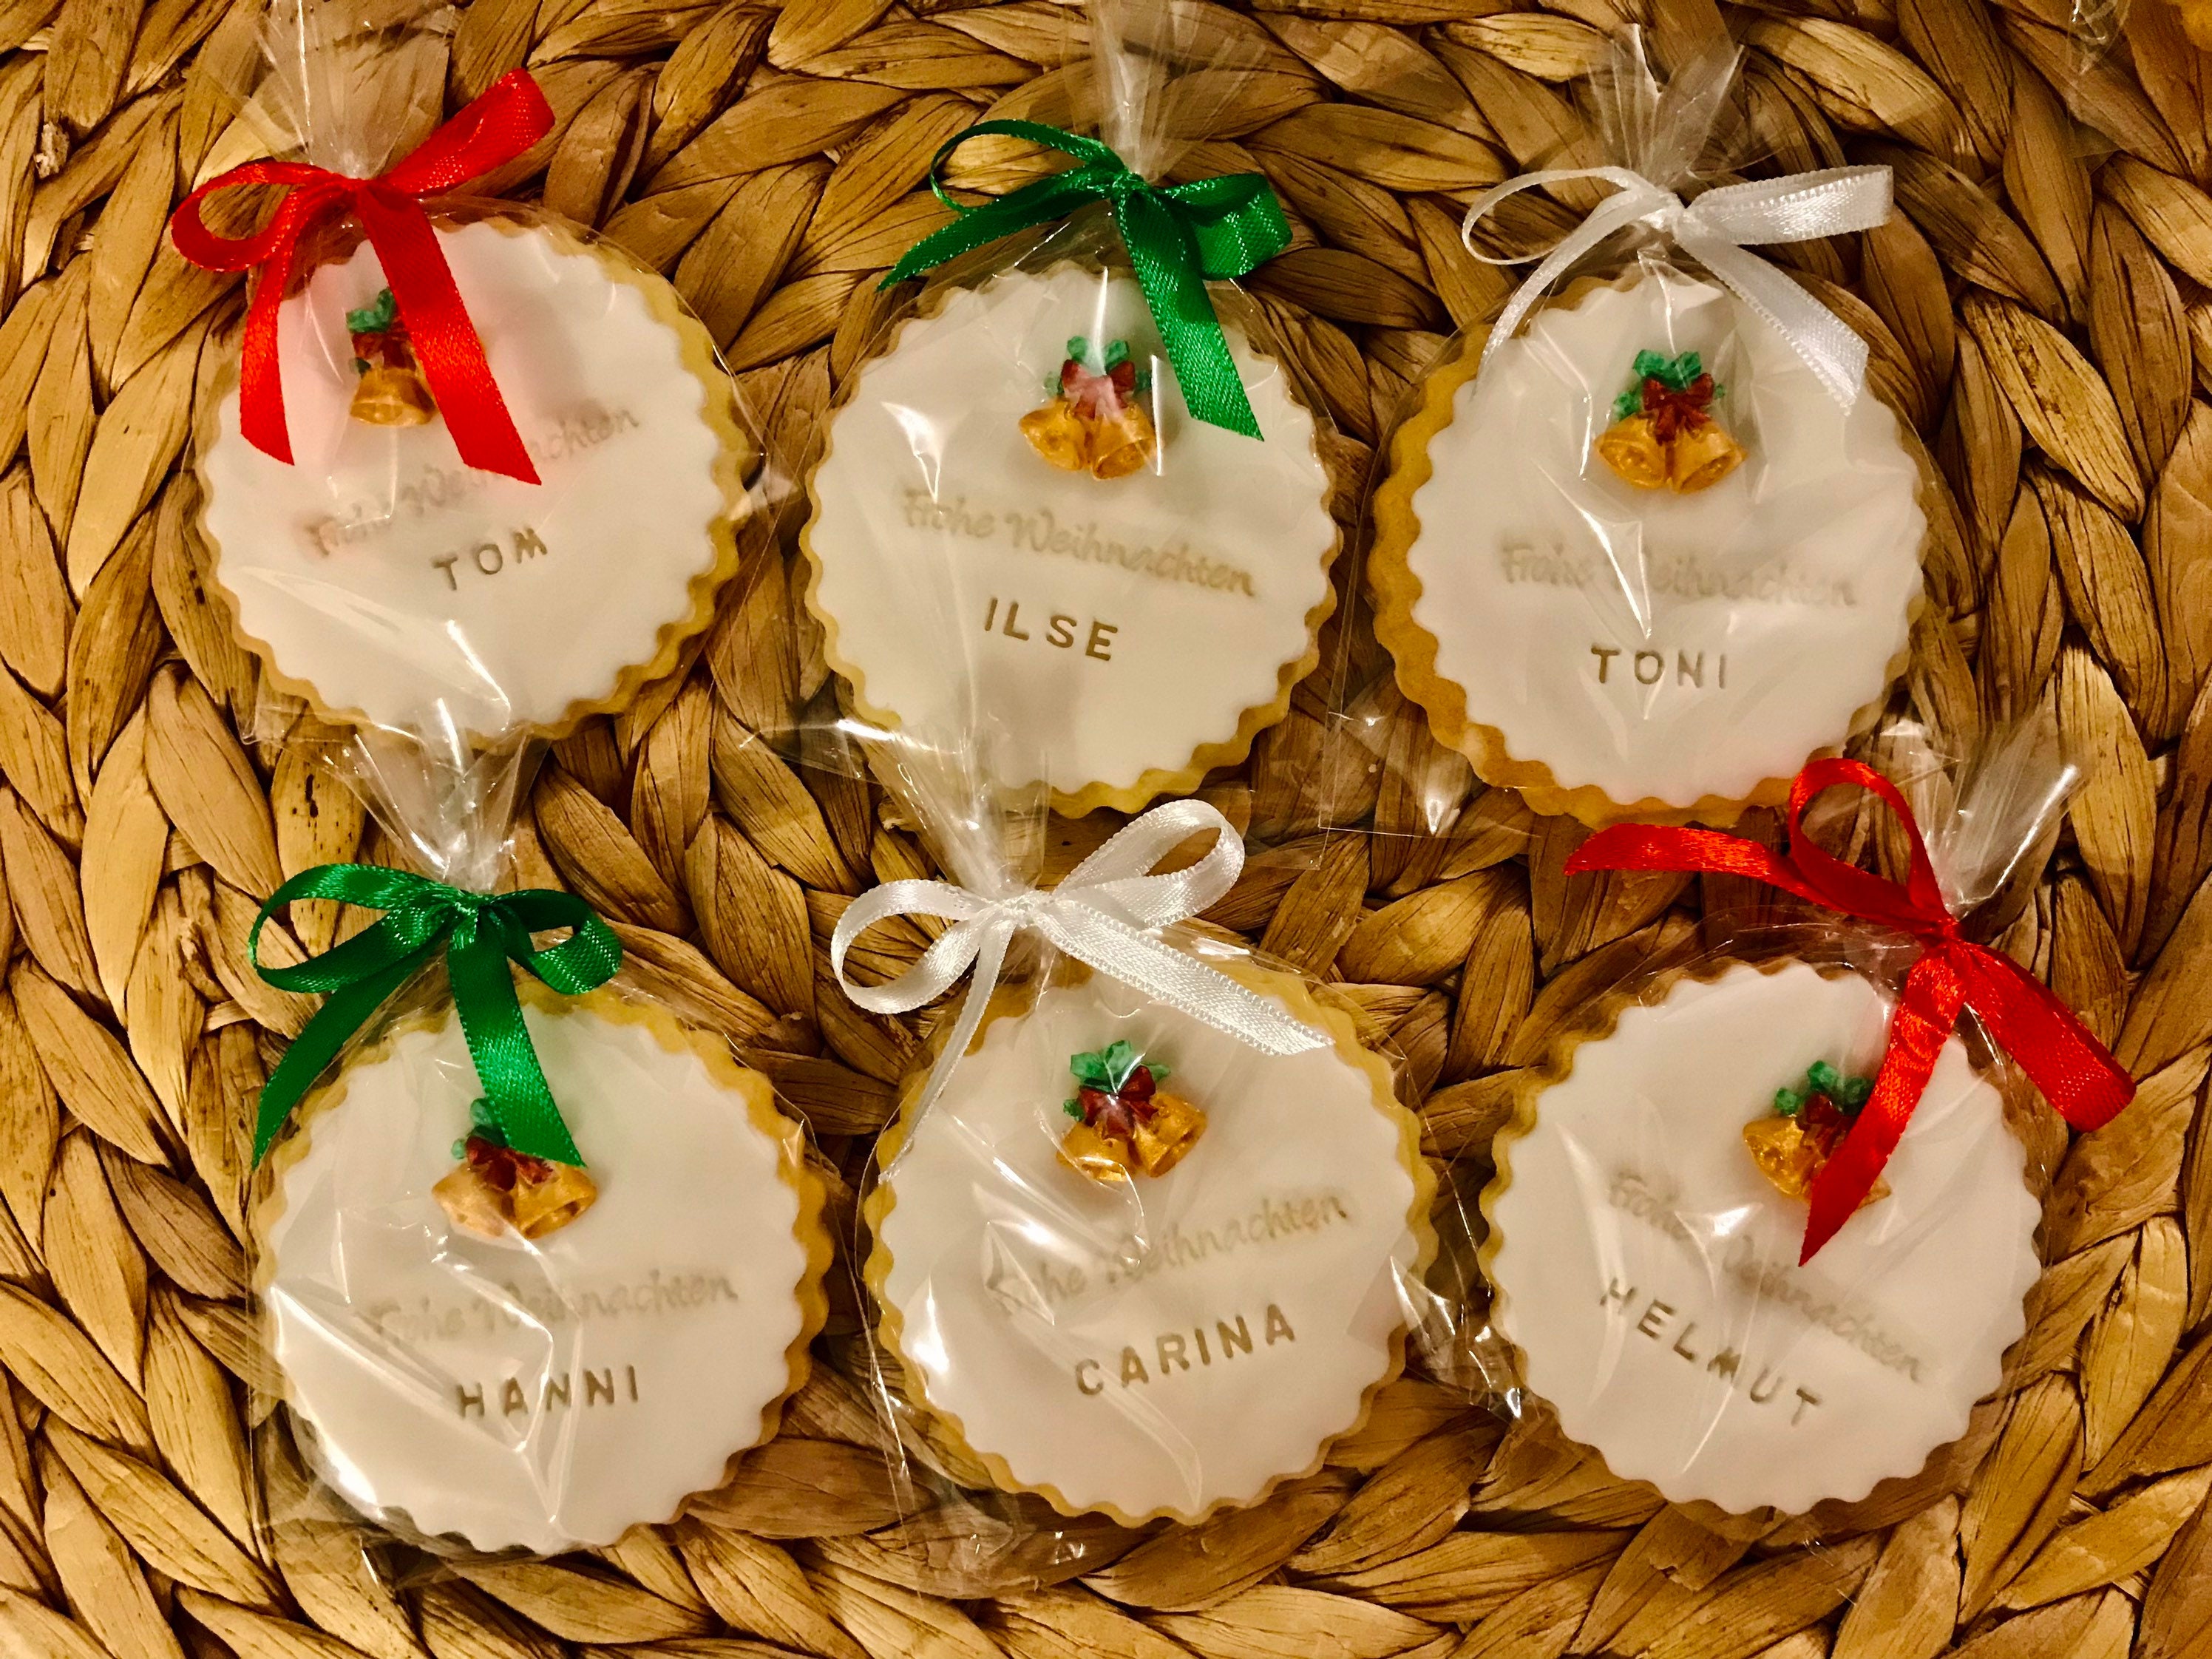 GALLETA DE AZÚCAR Elf PERSONALIZADA, Galletas navideñas Elf, galletas  decoradas regalo de Navidad, galletas navideñas, favores navideños, galletas  personalizadas -  España